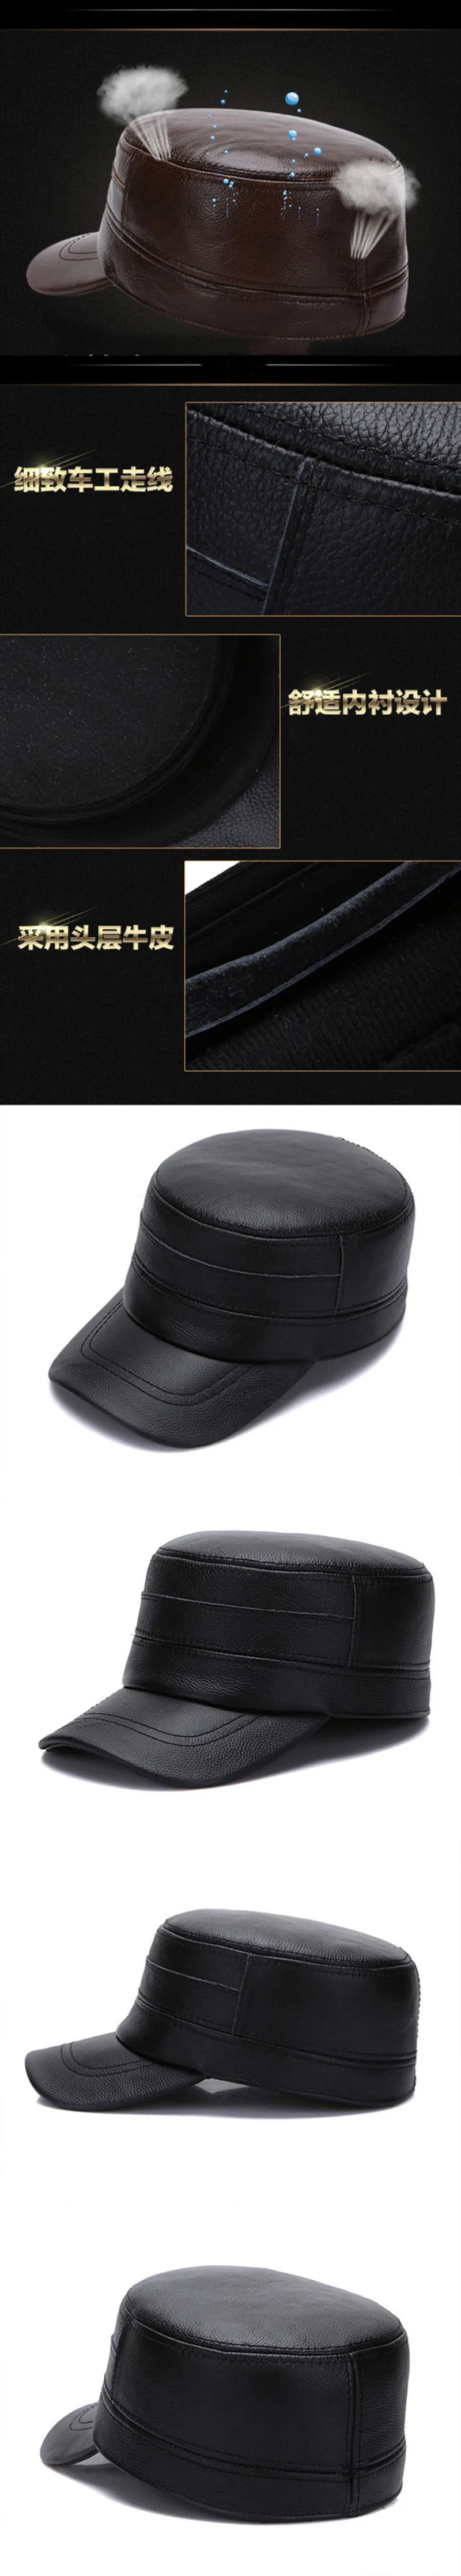 SILOQIN/Модная осенне-зимняя шапка из натуральной кожи; модные теплые шапки в стиле милитари из воловьей кожи; Кепка Snapback; Элегантная кепка для отдыха на плоской подошве для мужчин